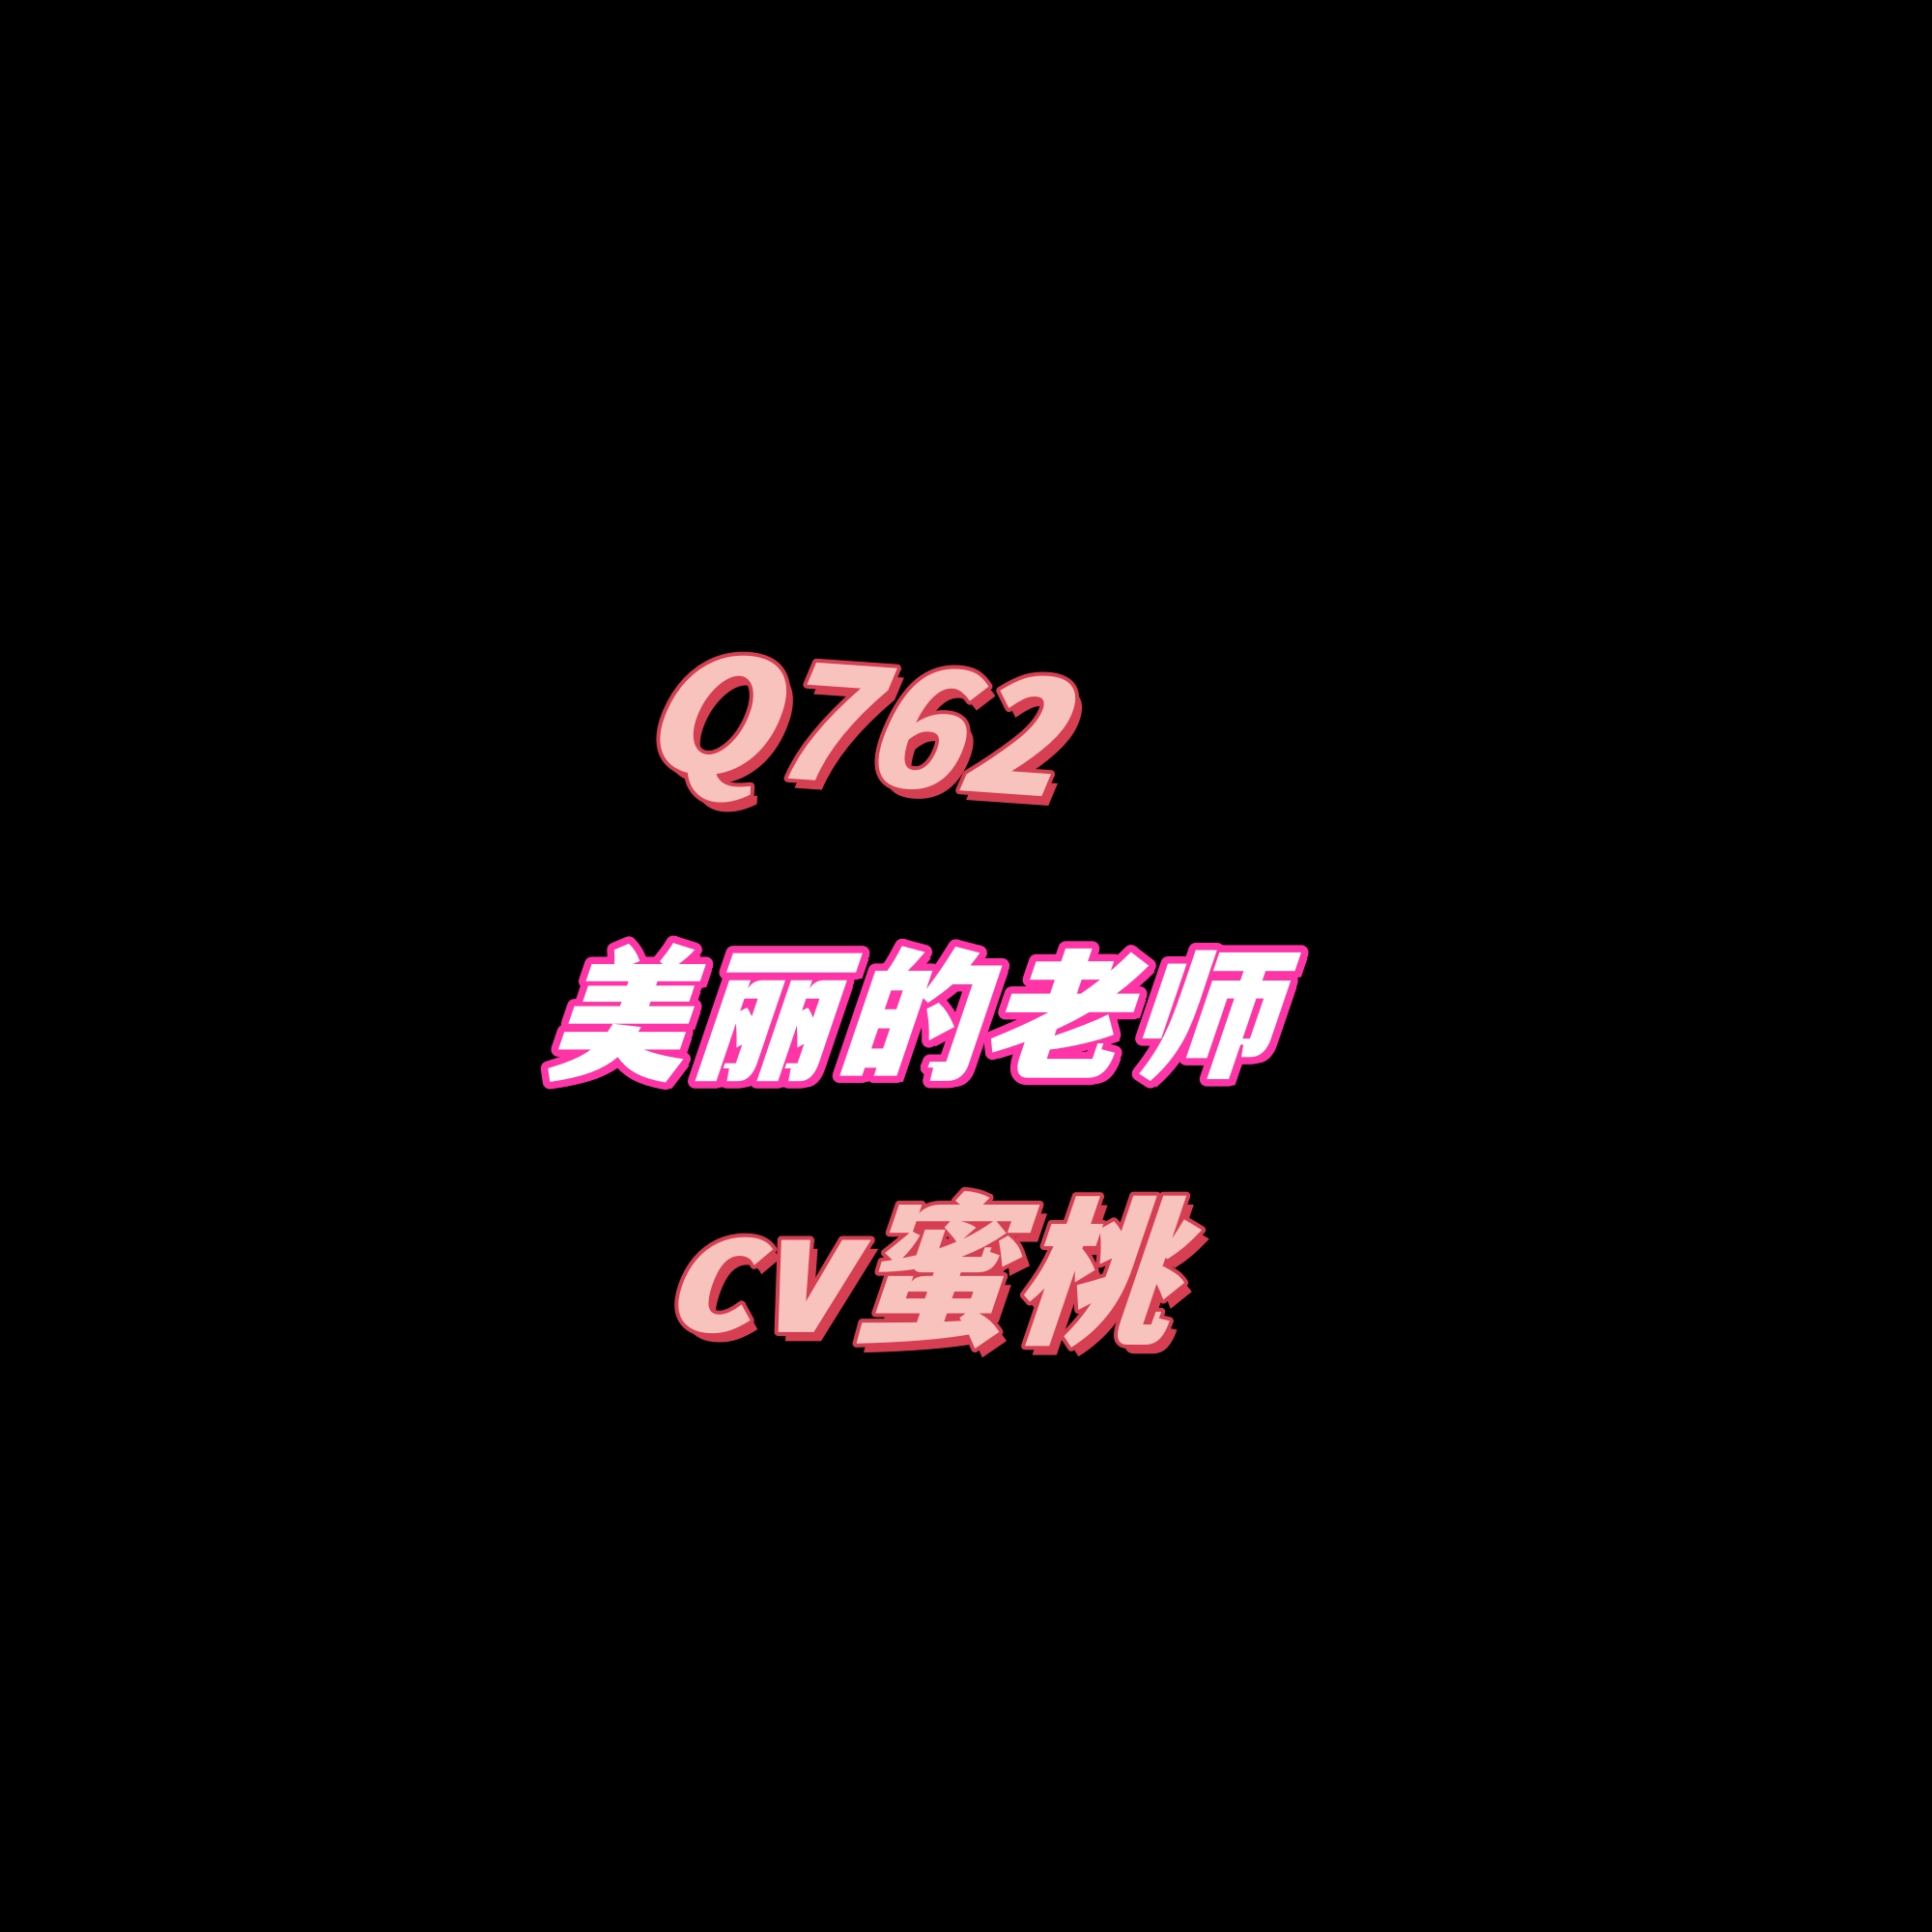 密码保护：Q762奇葩老师-cv蜜桃